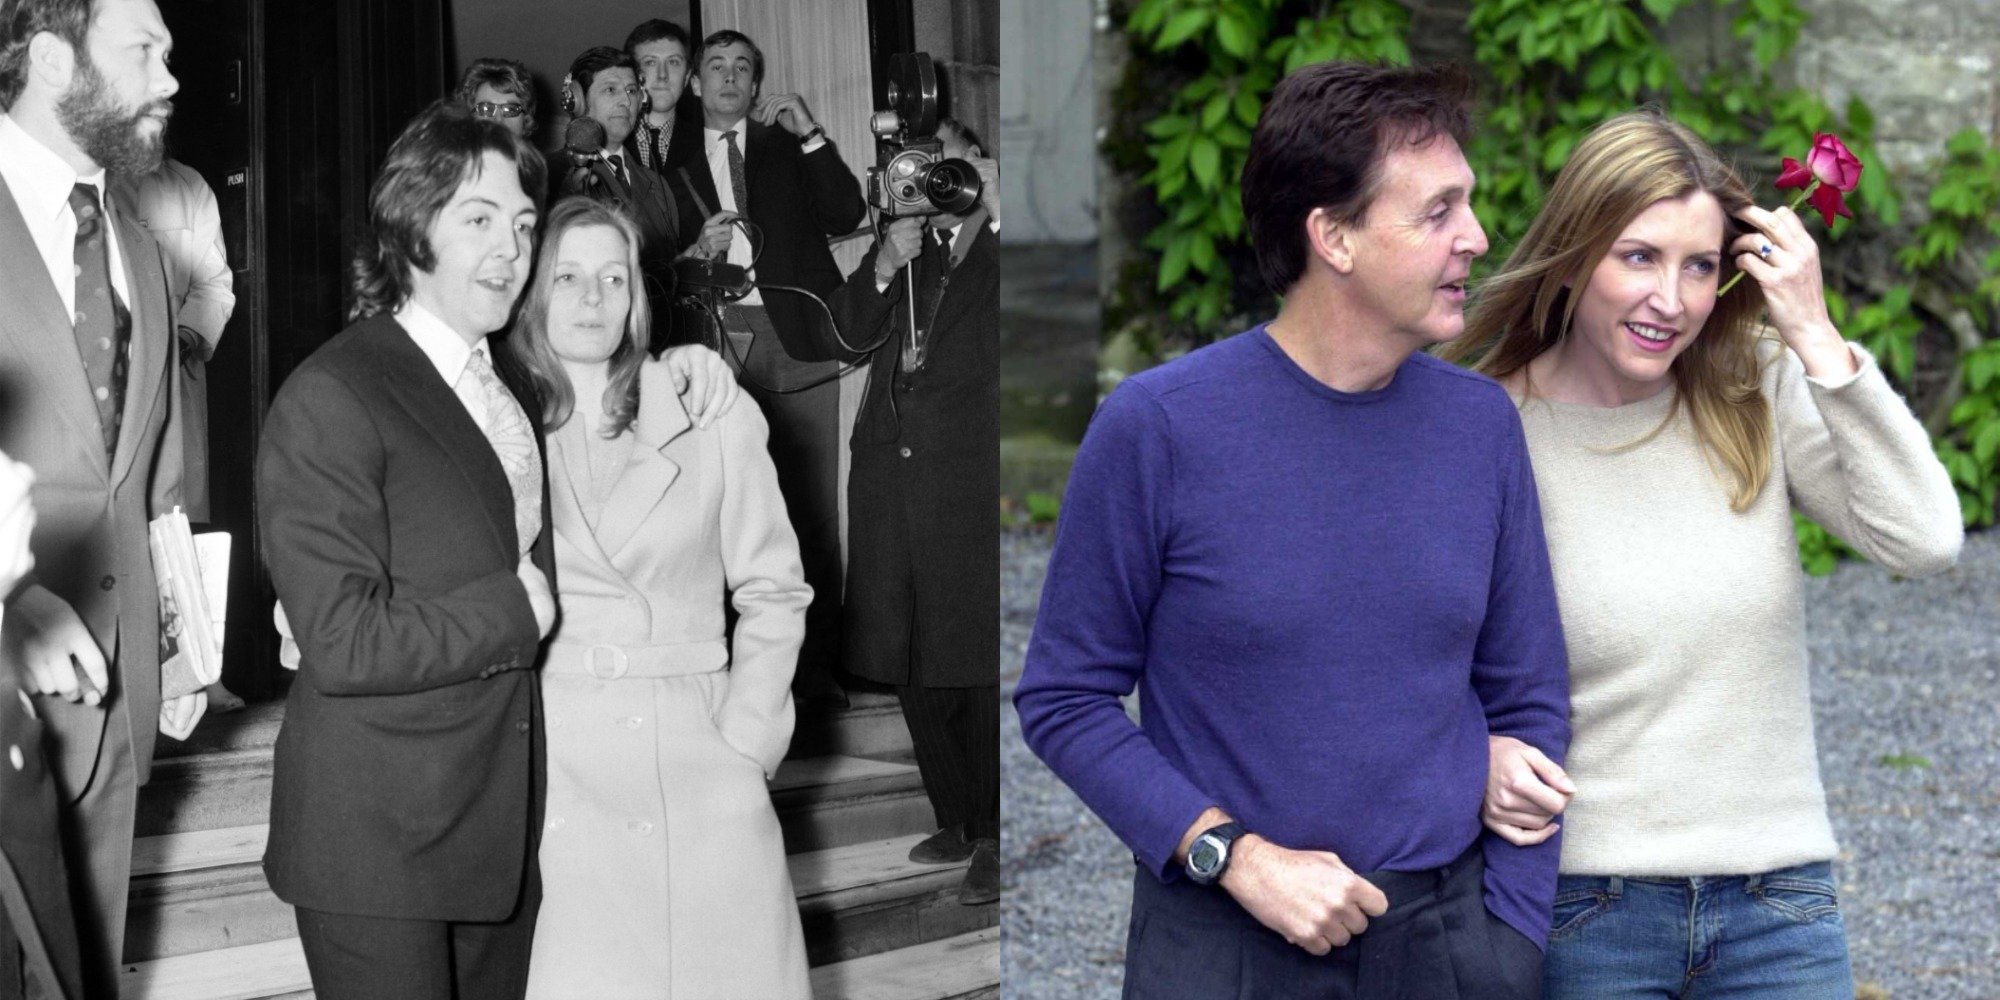 (L) Paul McCartney married Linda in 1969. (R) He wed Heather Mills in 2002.